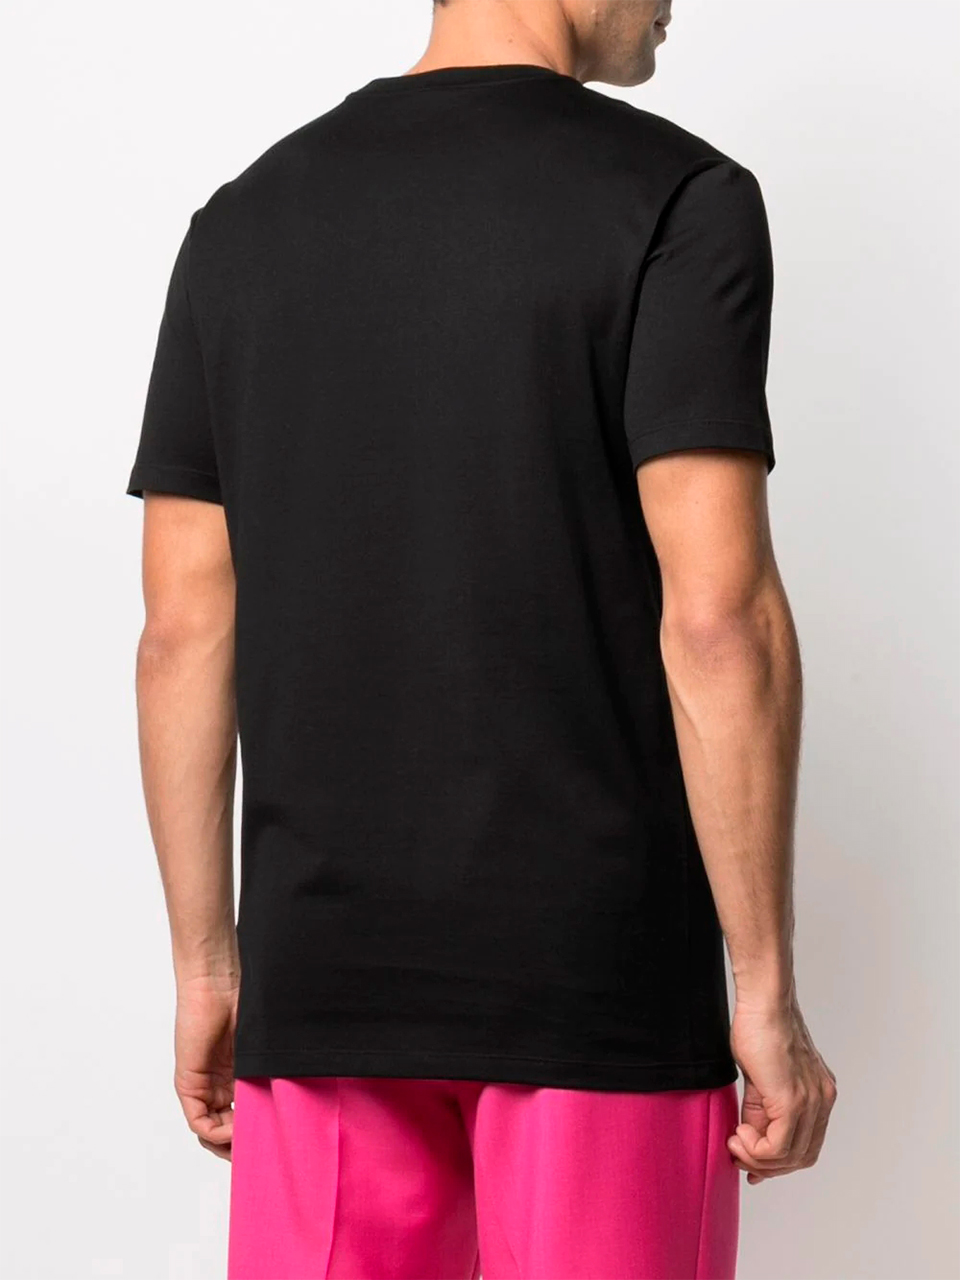 Imagem de: Camiseta Versace Preta com Estampa Medusa